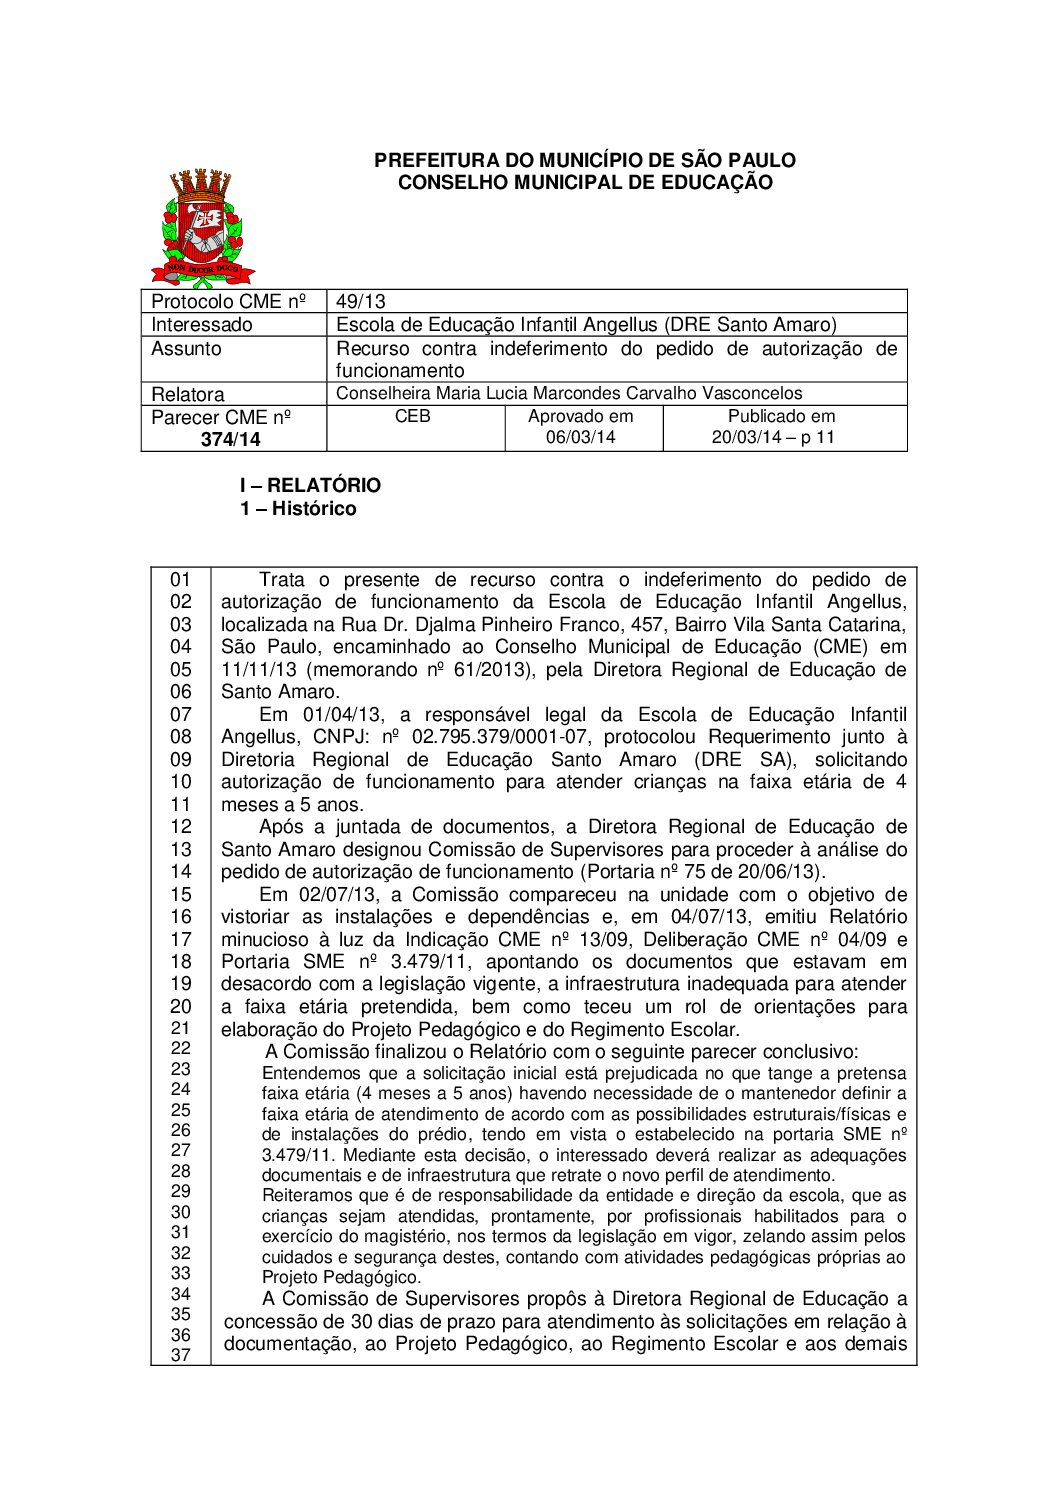 Parecer CME nº 374/2014 - Escola de Educação Infantil Angellus (DRE Santo Amaro) - Recurso contra indeferimento do pedido de autorização de funcionamento 